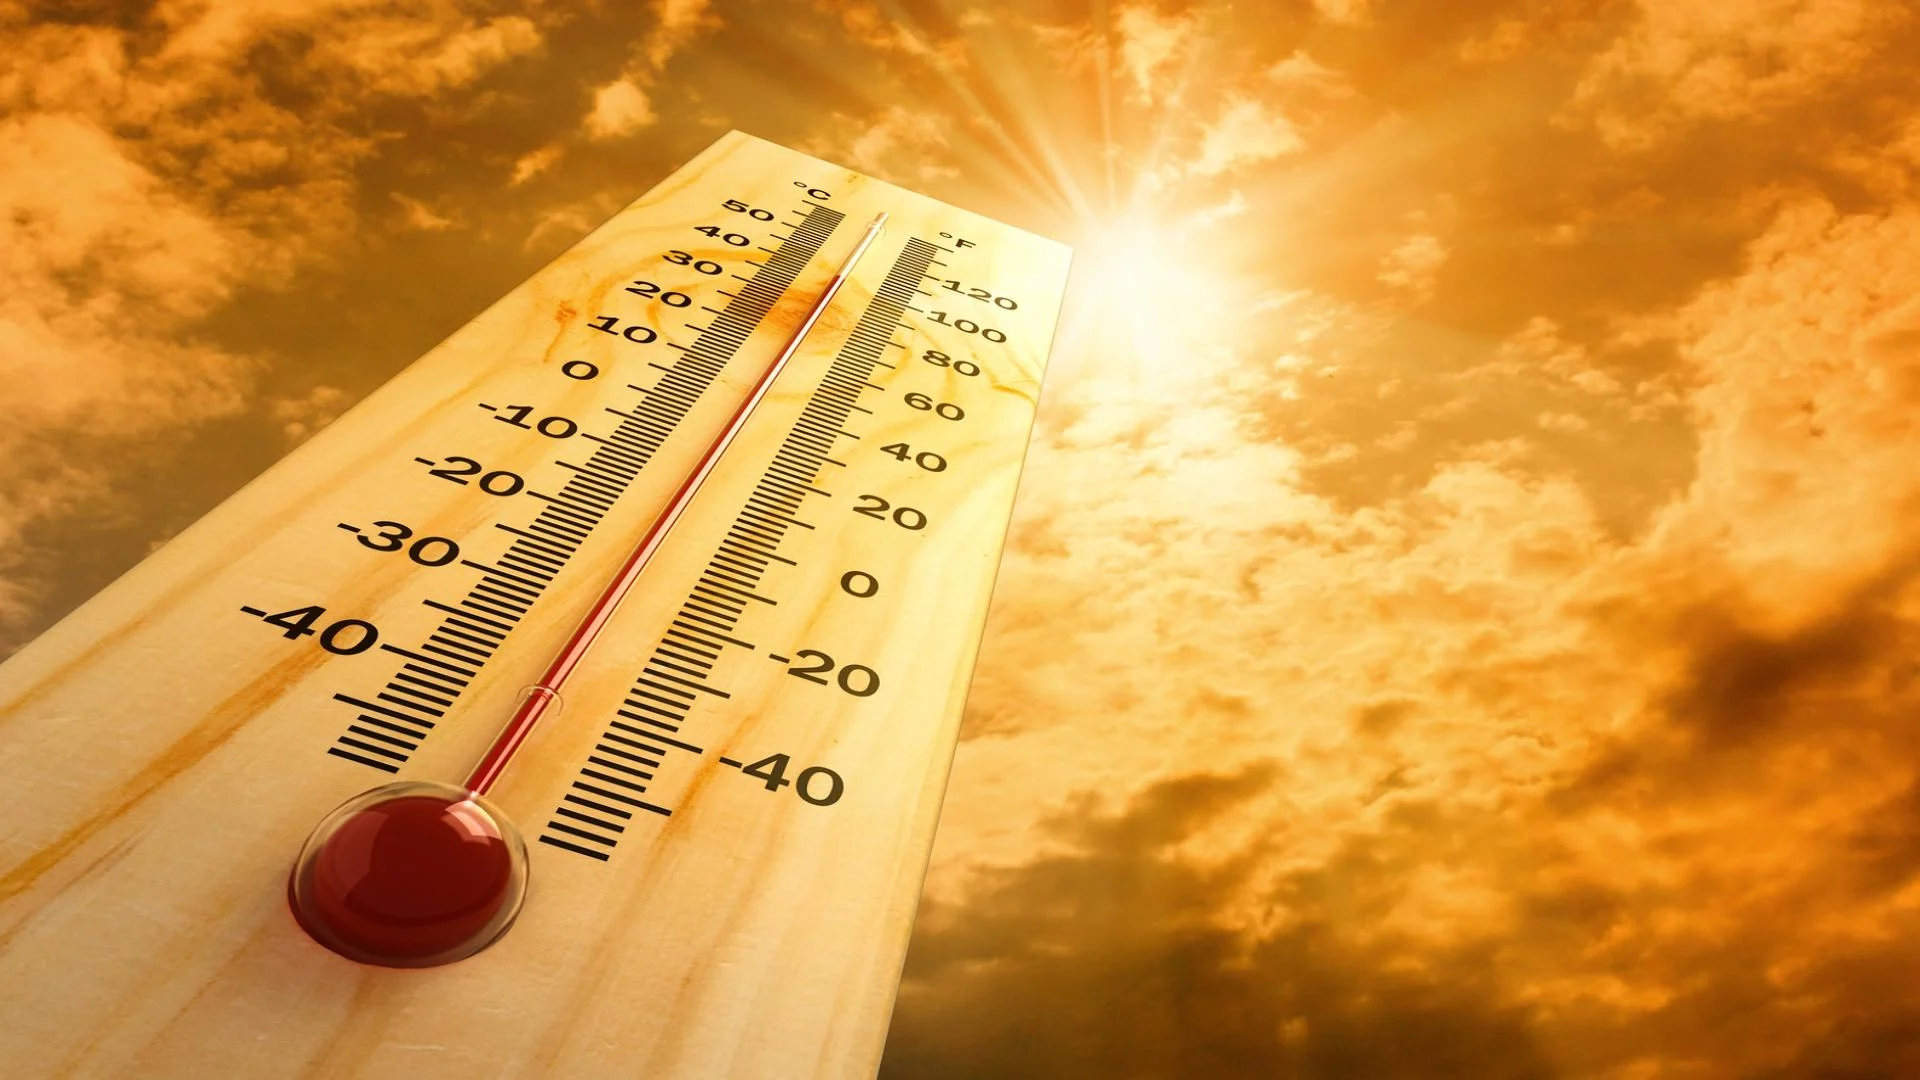 La hausse des températures crée de plus en plus de risques pour la santé